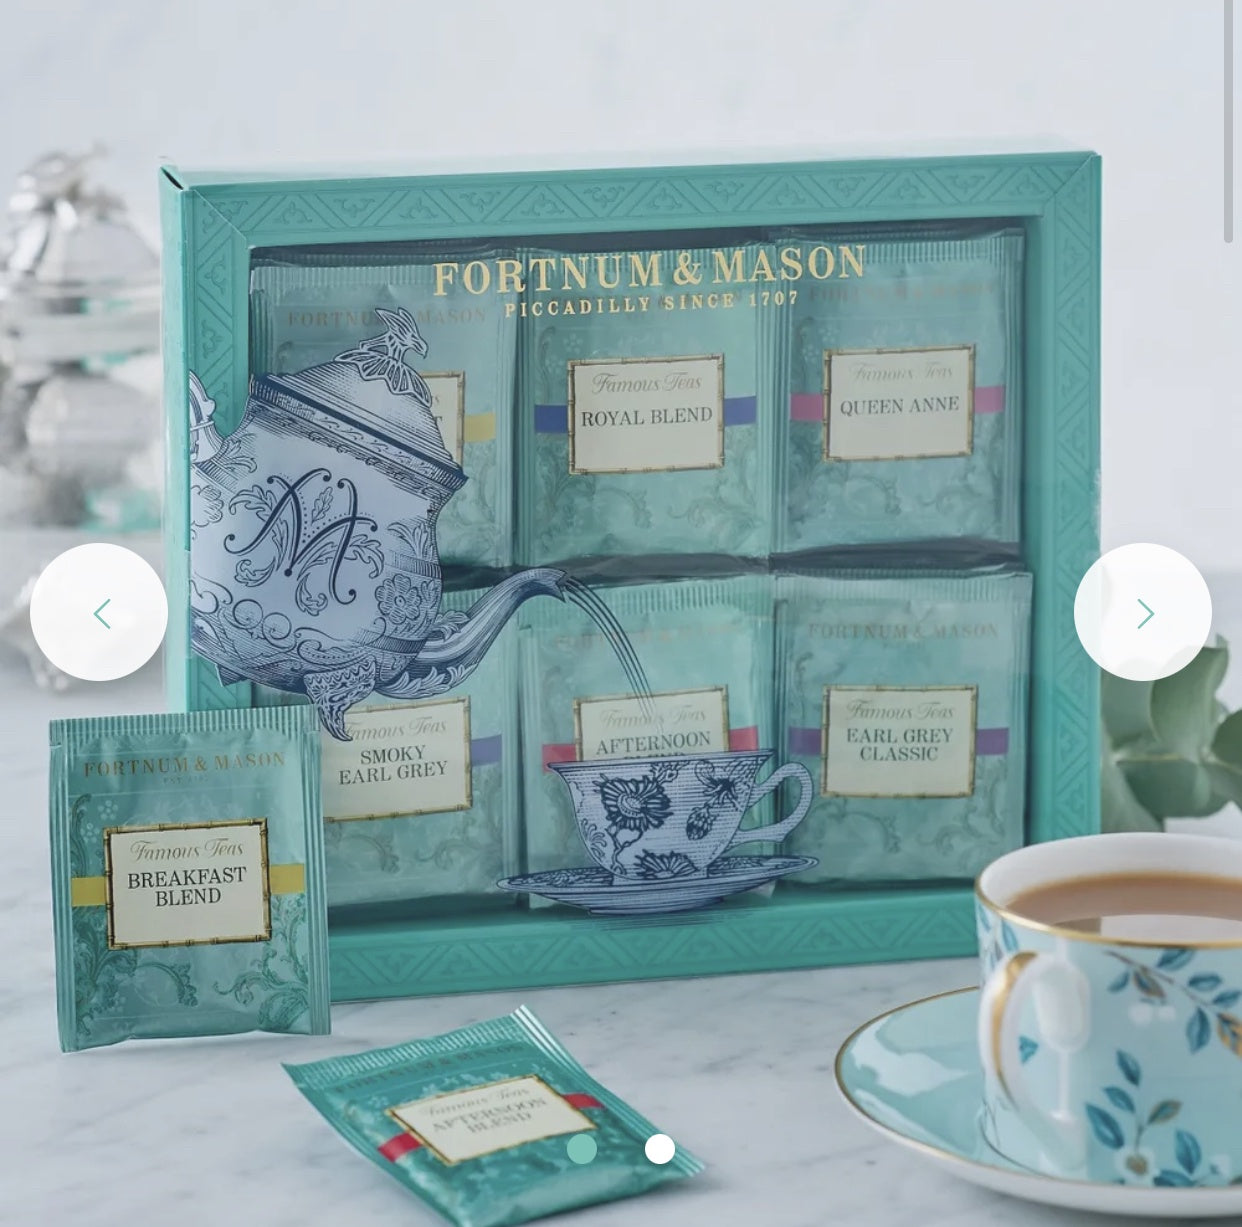 Fortnum's Famous Tea Selection